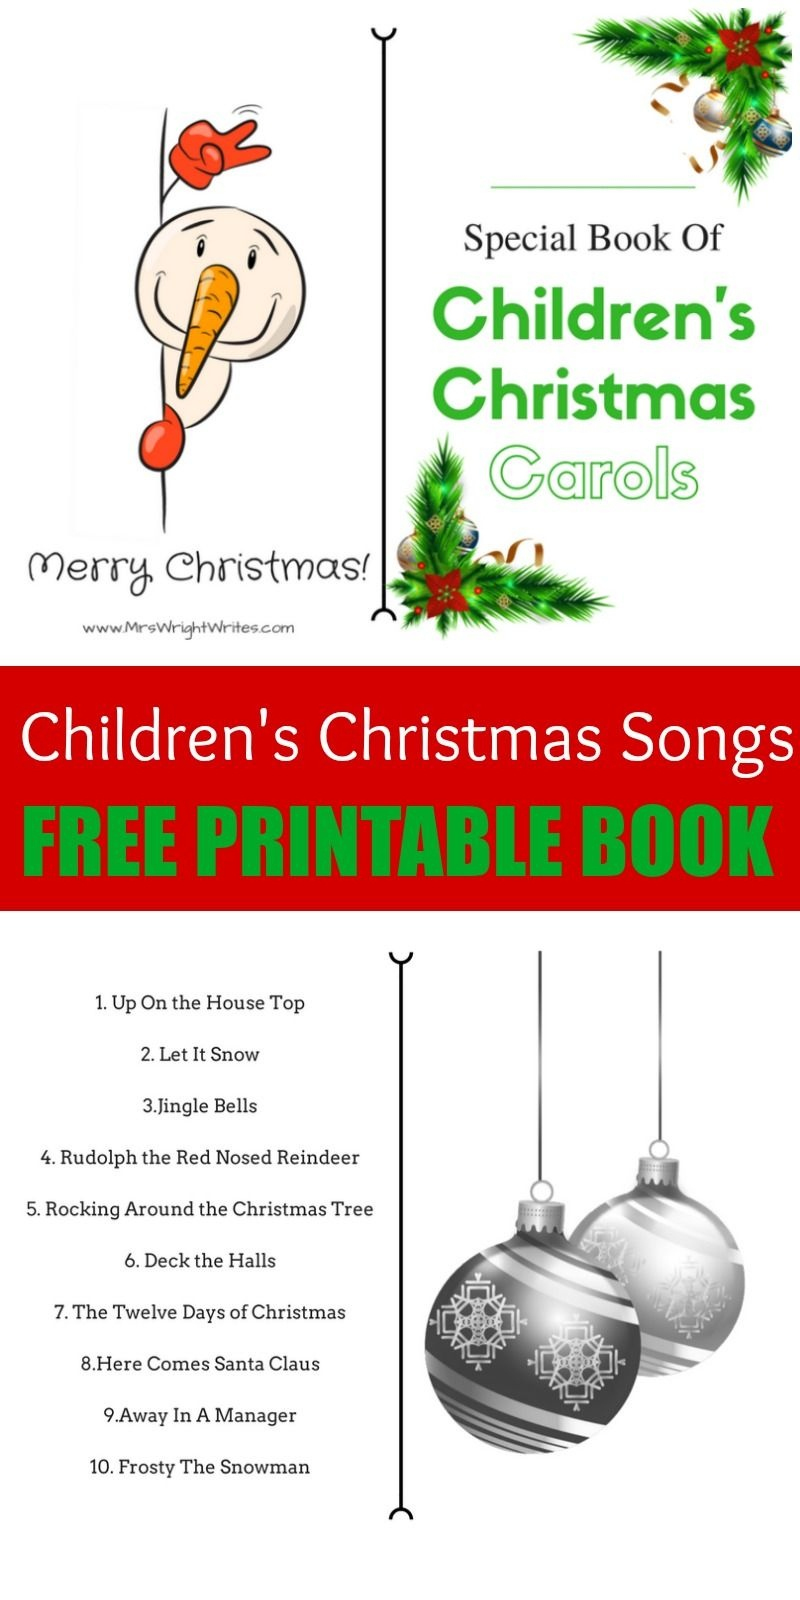 free-printable-christmas-carol-booklets-richard-printable